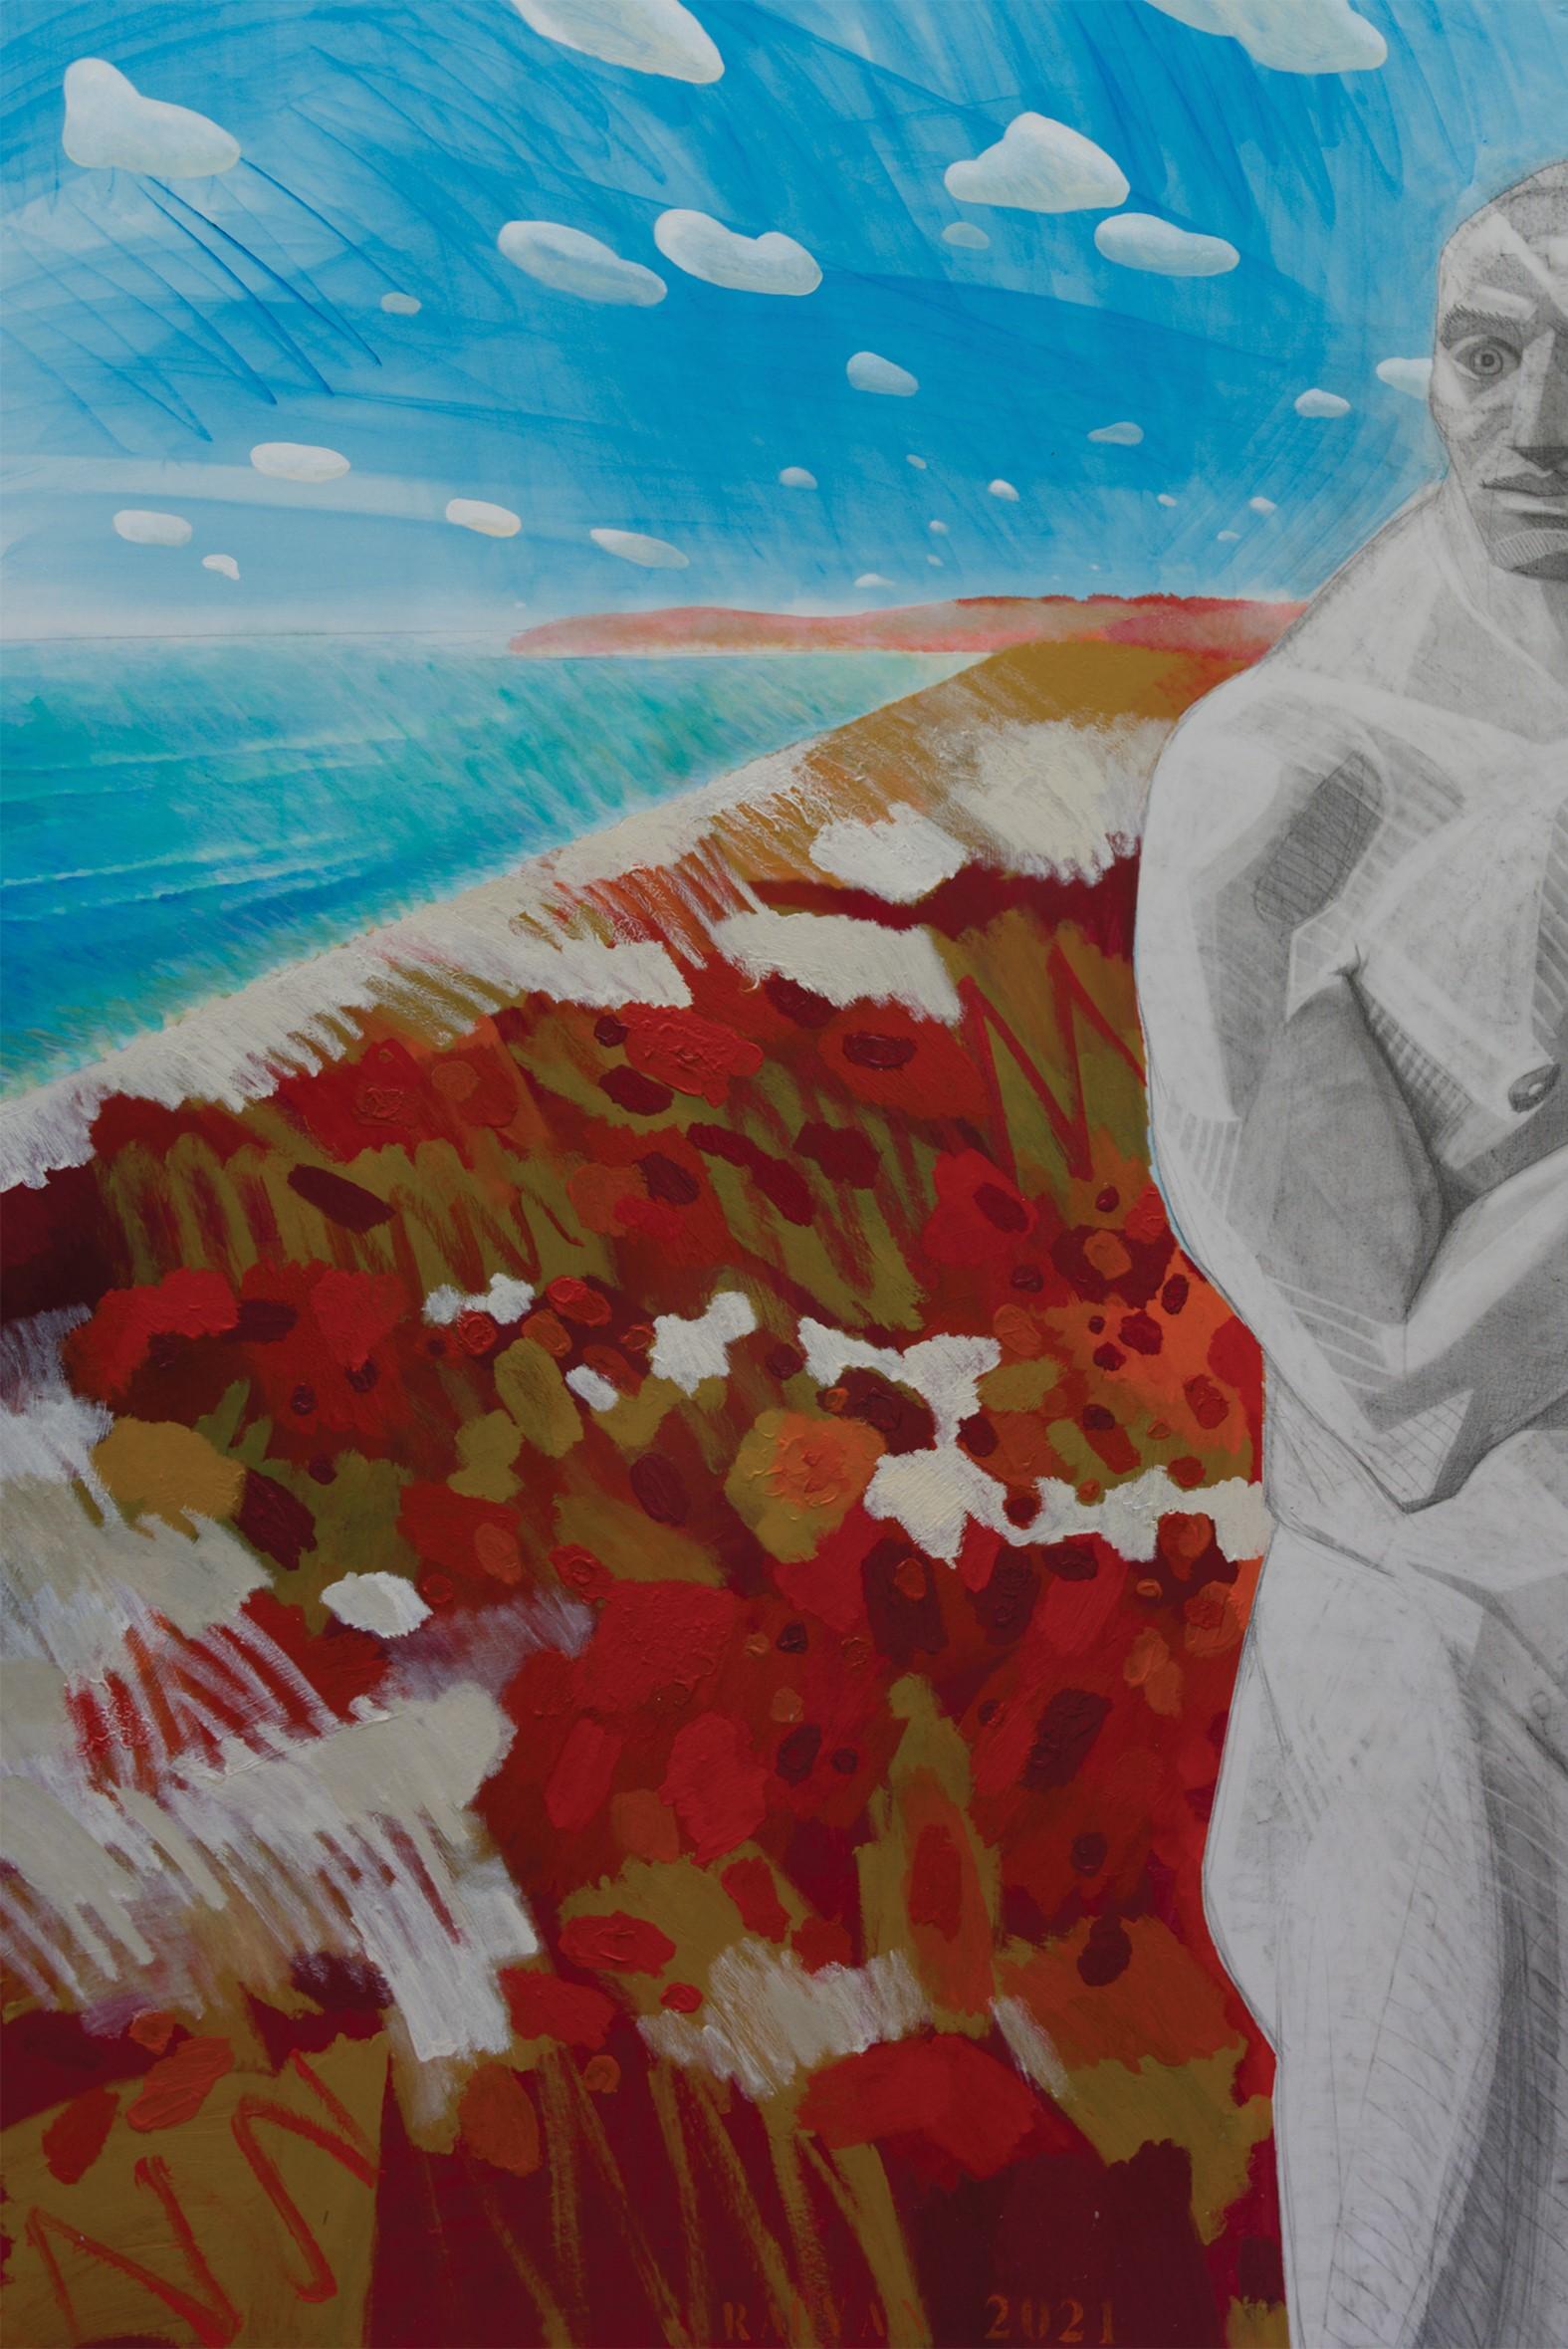 Homme en graphite sur la plage rouge, 2021
acrylique sur toile
78 47/64 H x 72 53/64 L cm
200 H x 185 L cm

Signé au milieu du front

L'œuvre d'art a fait partie de l'exposition solo du musée 